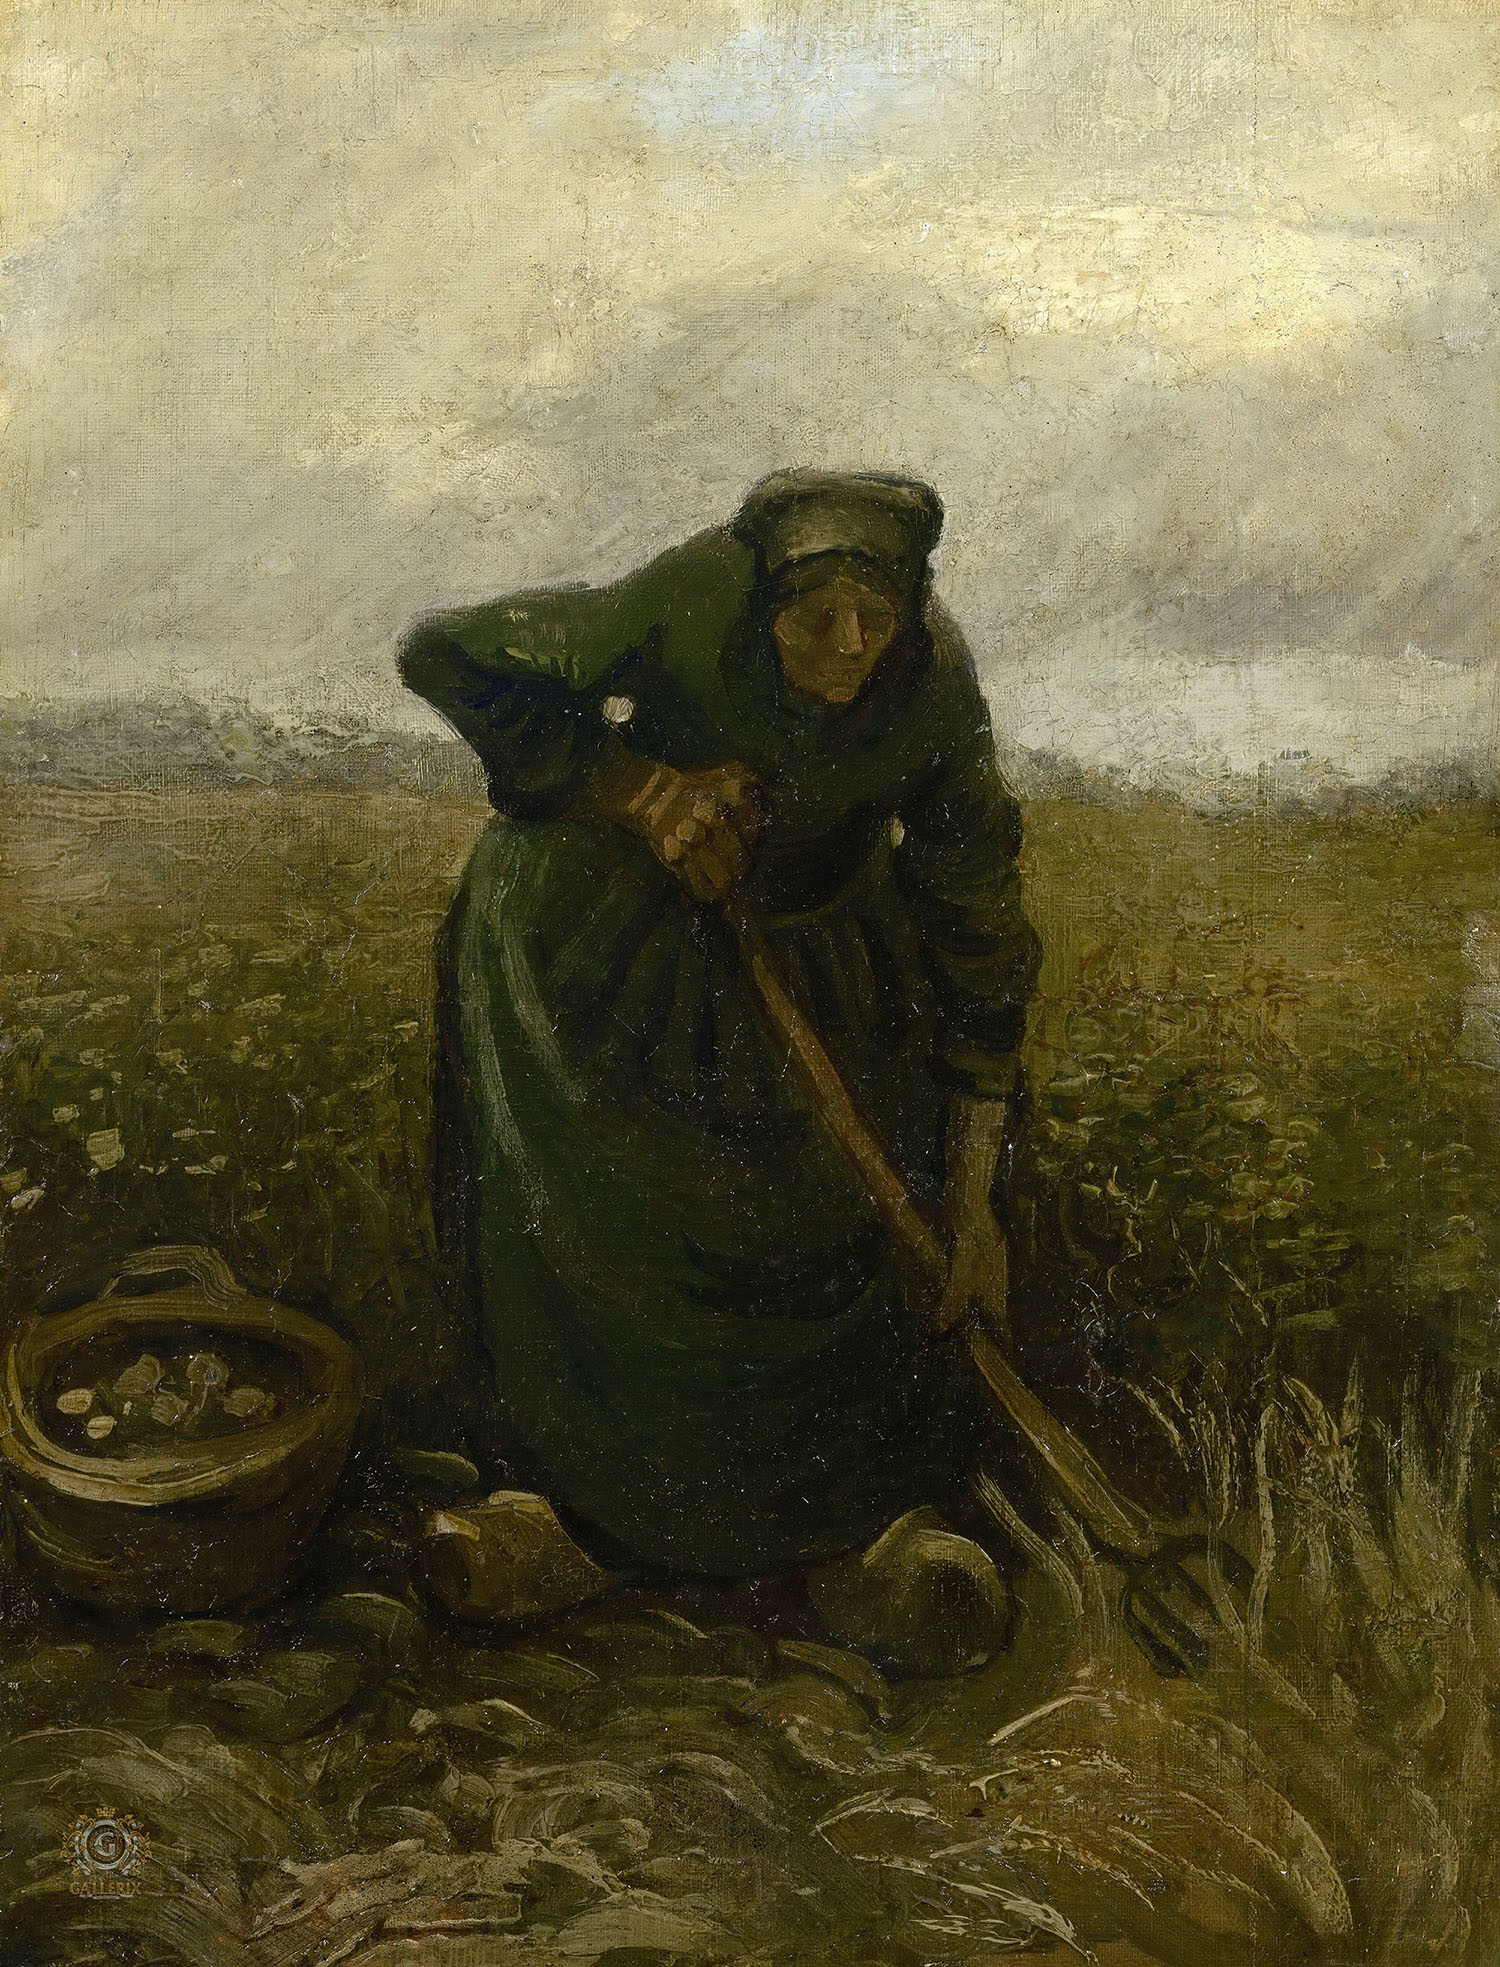 Винсент Ван Гог. "Женщина, выкапывающая картофель". 1885. Музей Ван Гога, Амстердам.